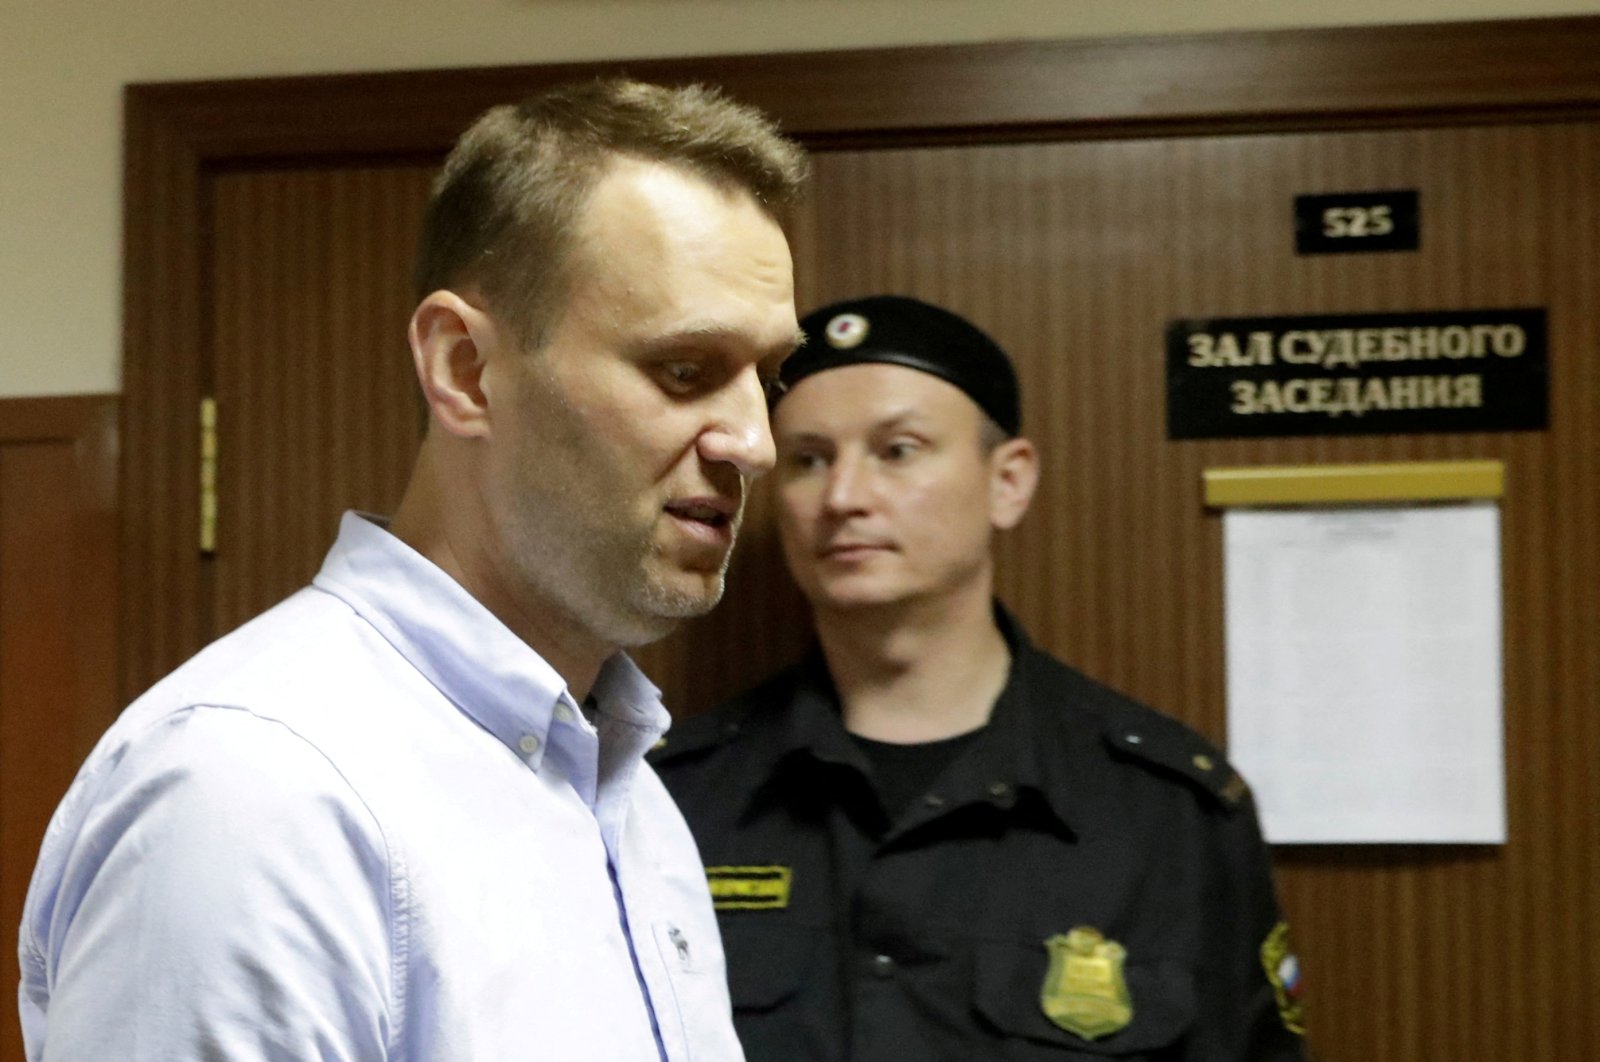 Russia puts opposition figure Navalny on terrorist list